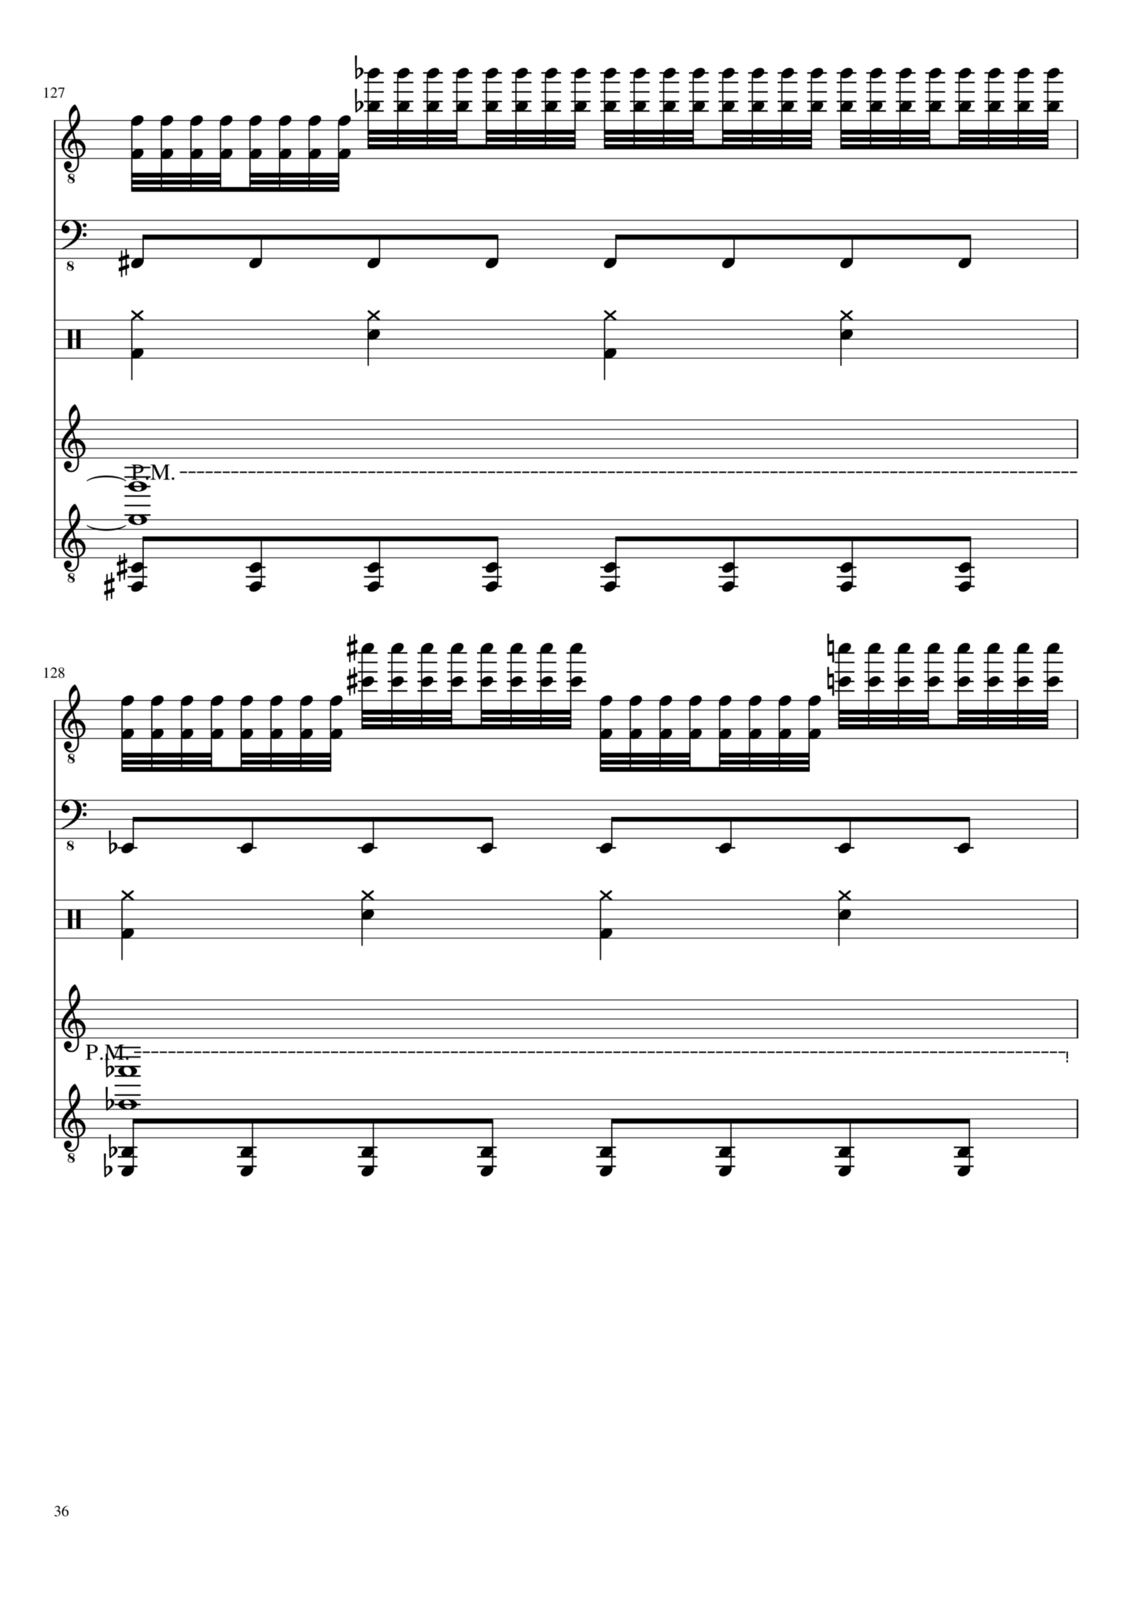 Vechnaya prizrachnaya vstrechnaya slide, Image 36